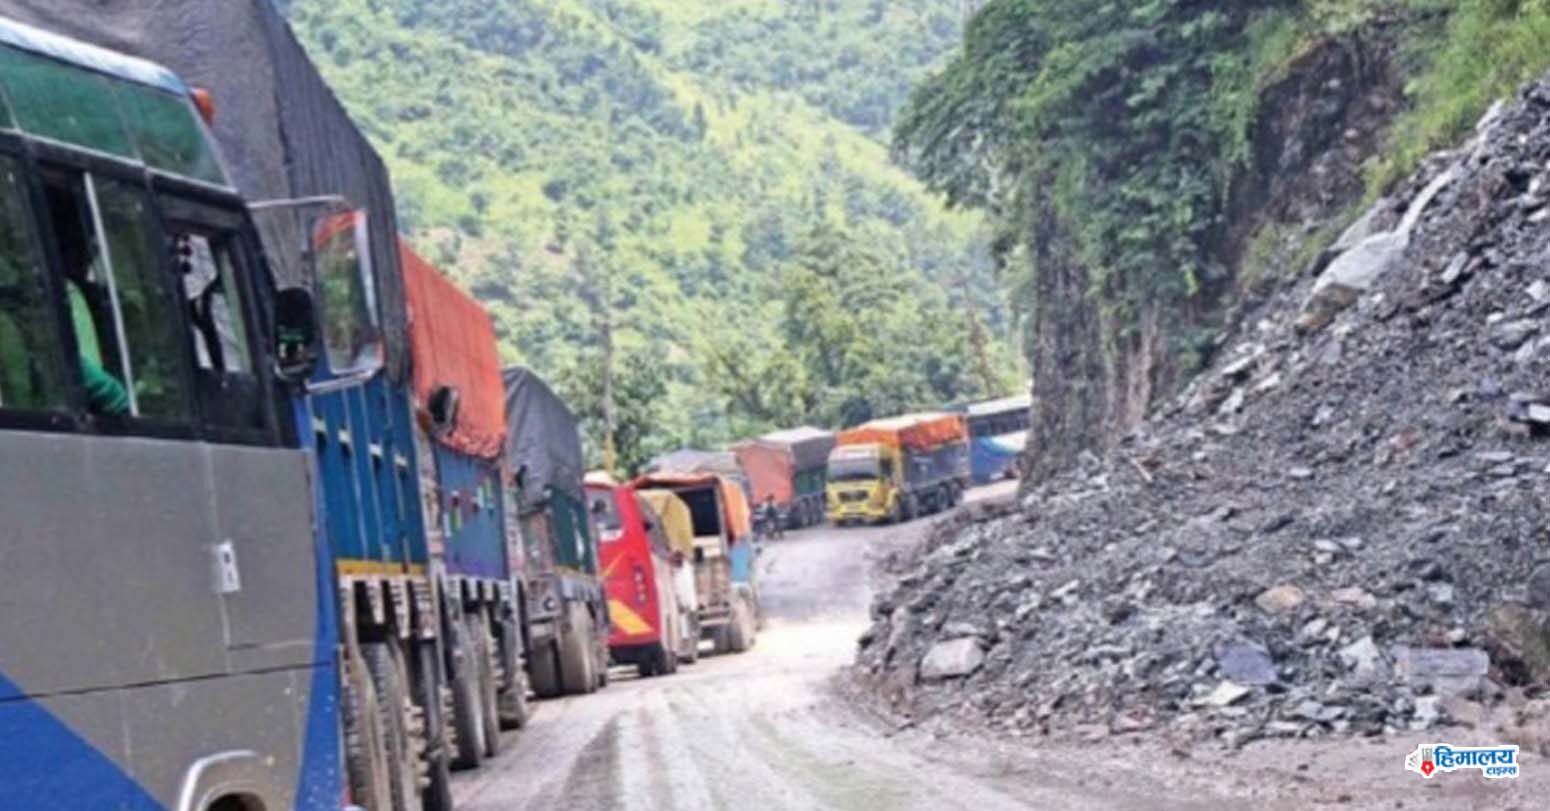 NarayangarhButwal road expansion sees dismal progress Himalaya Times